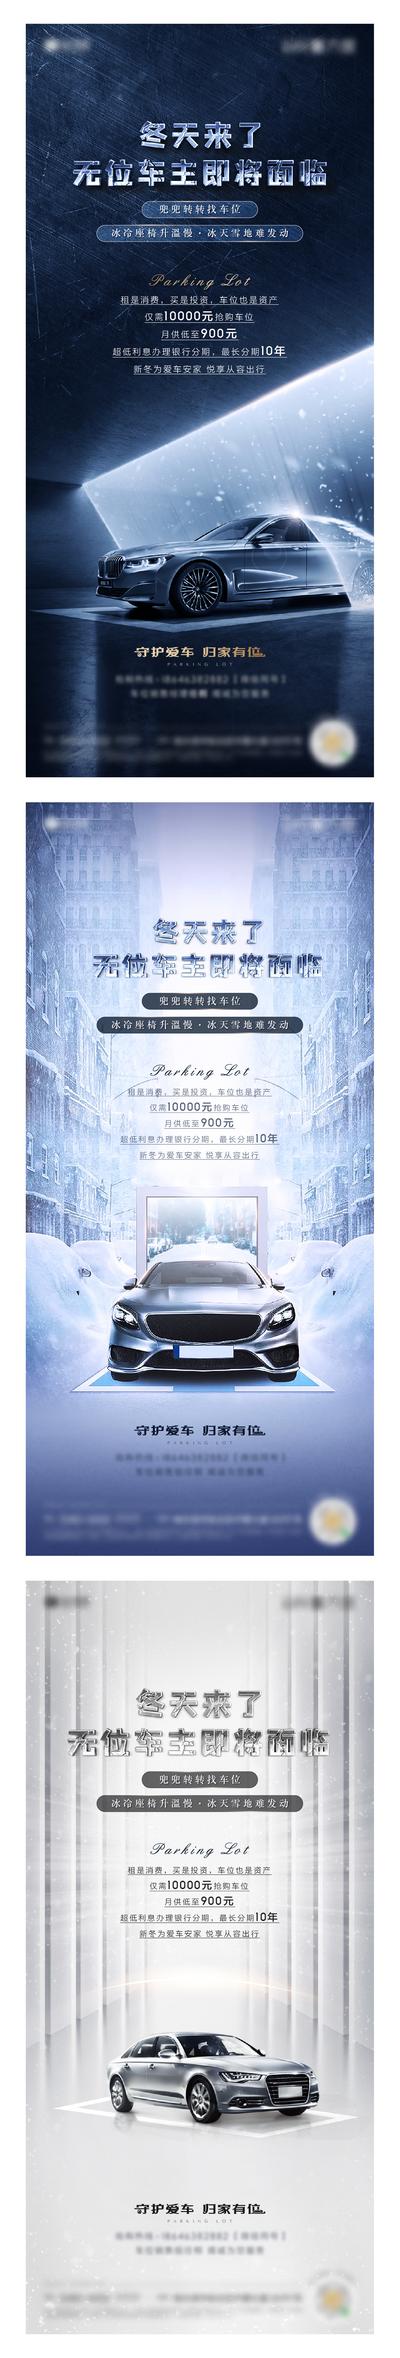 南门网 海报 房地产 车位 汽车 车 冬季 防寒 寒潮 雪 雪天 